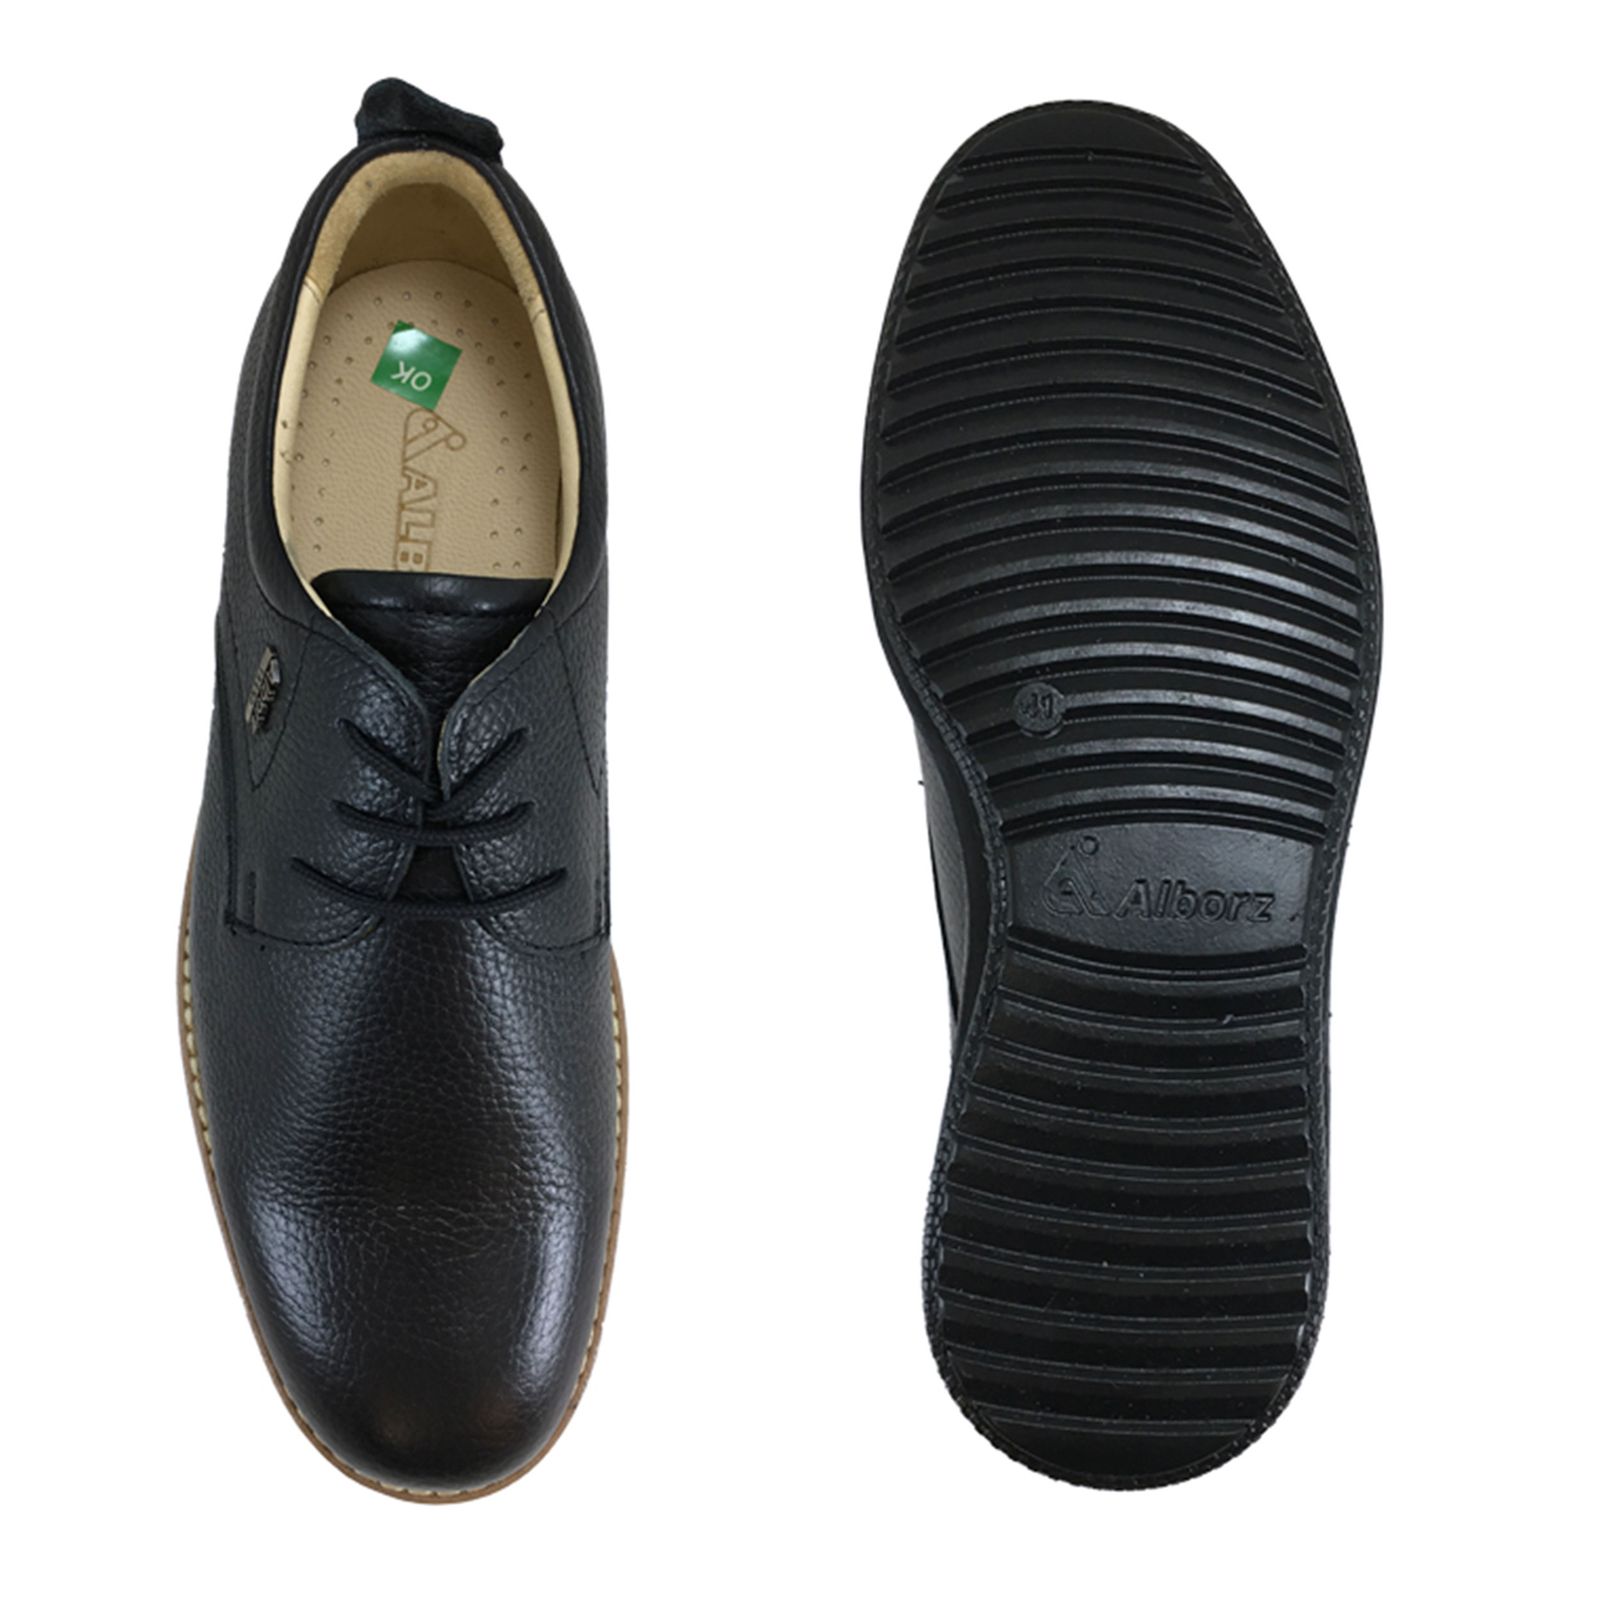 کفش روزمره مردانه شرکت کفش البرز مدل HMN کد 2924-3 -  - 16